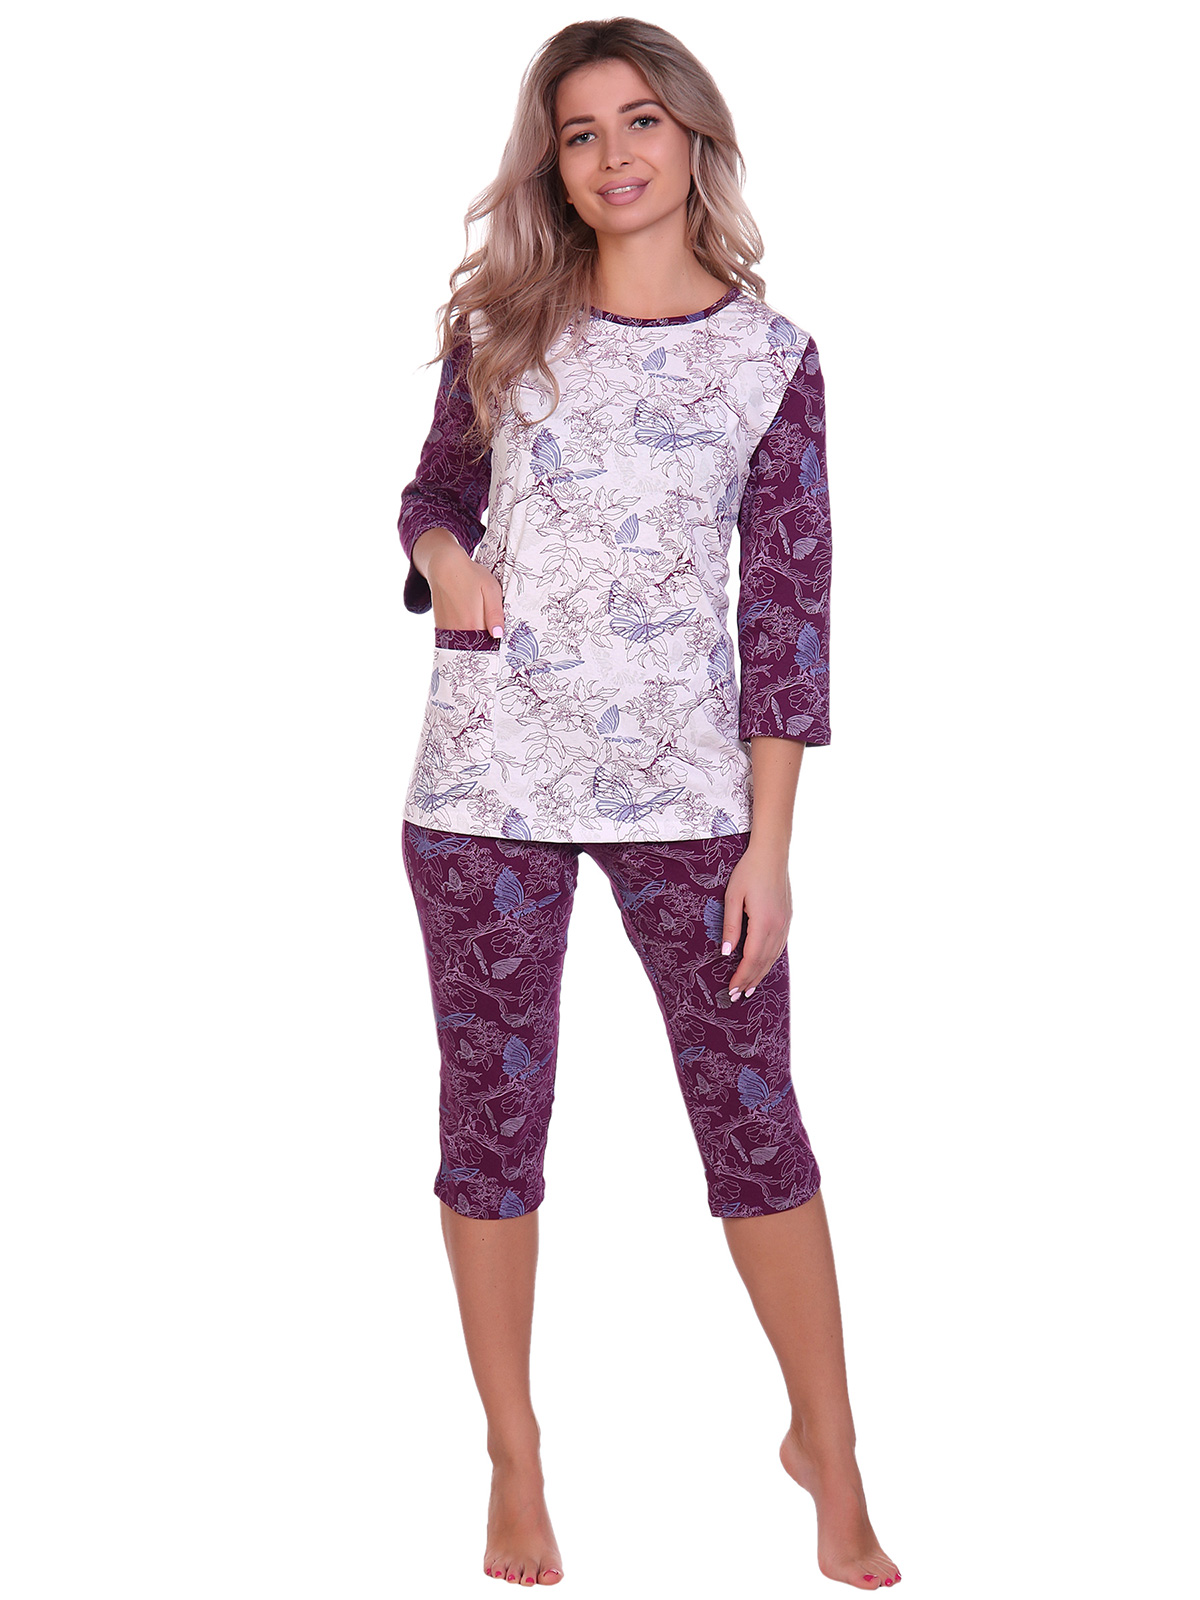 Жен. пижама арт. 16-0705 Бордовый р. 56 НСД Трикотаж, размер 56 - фото 1